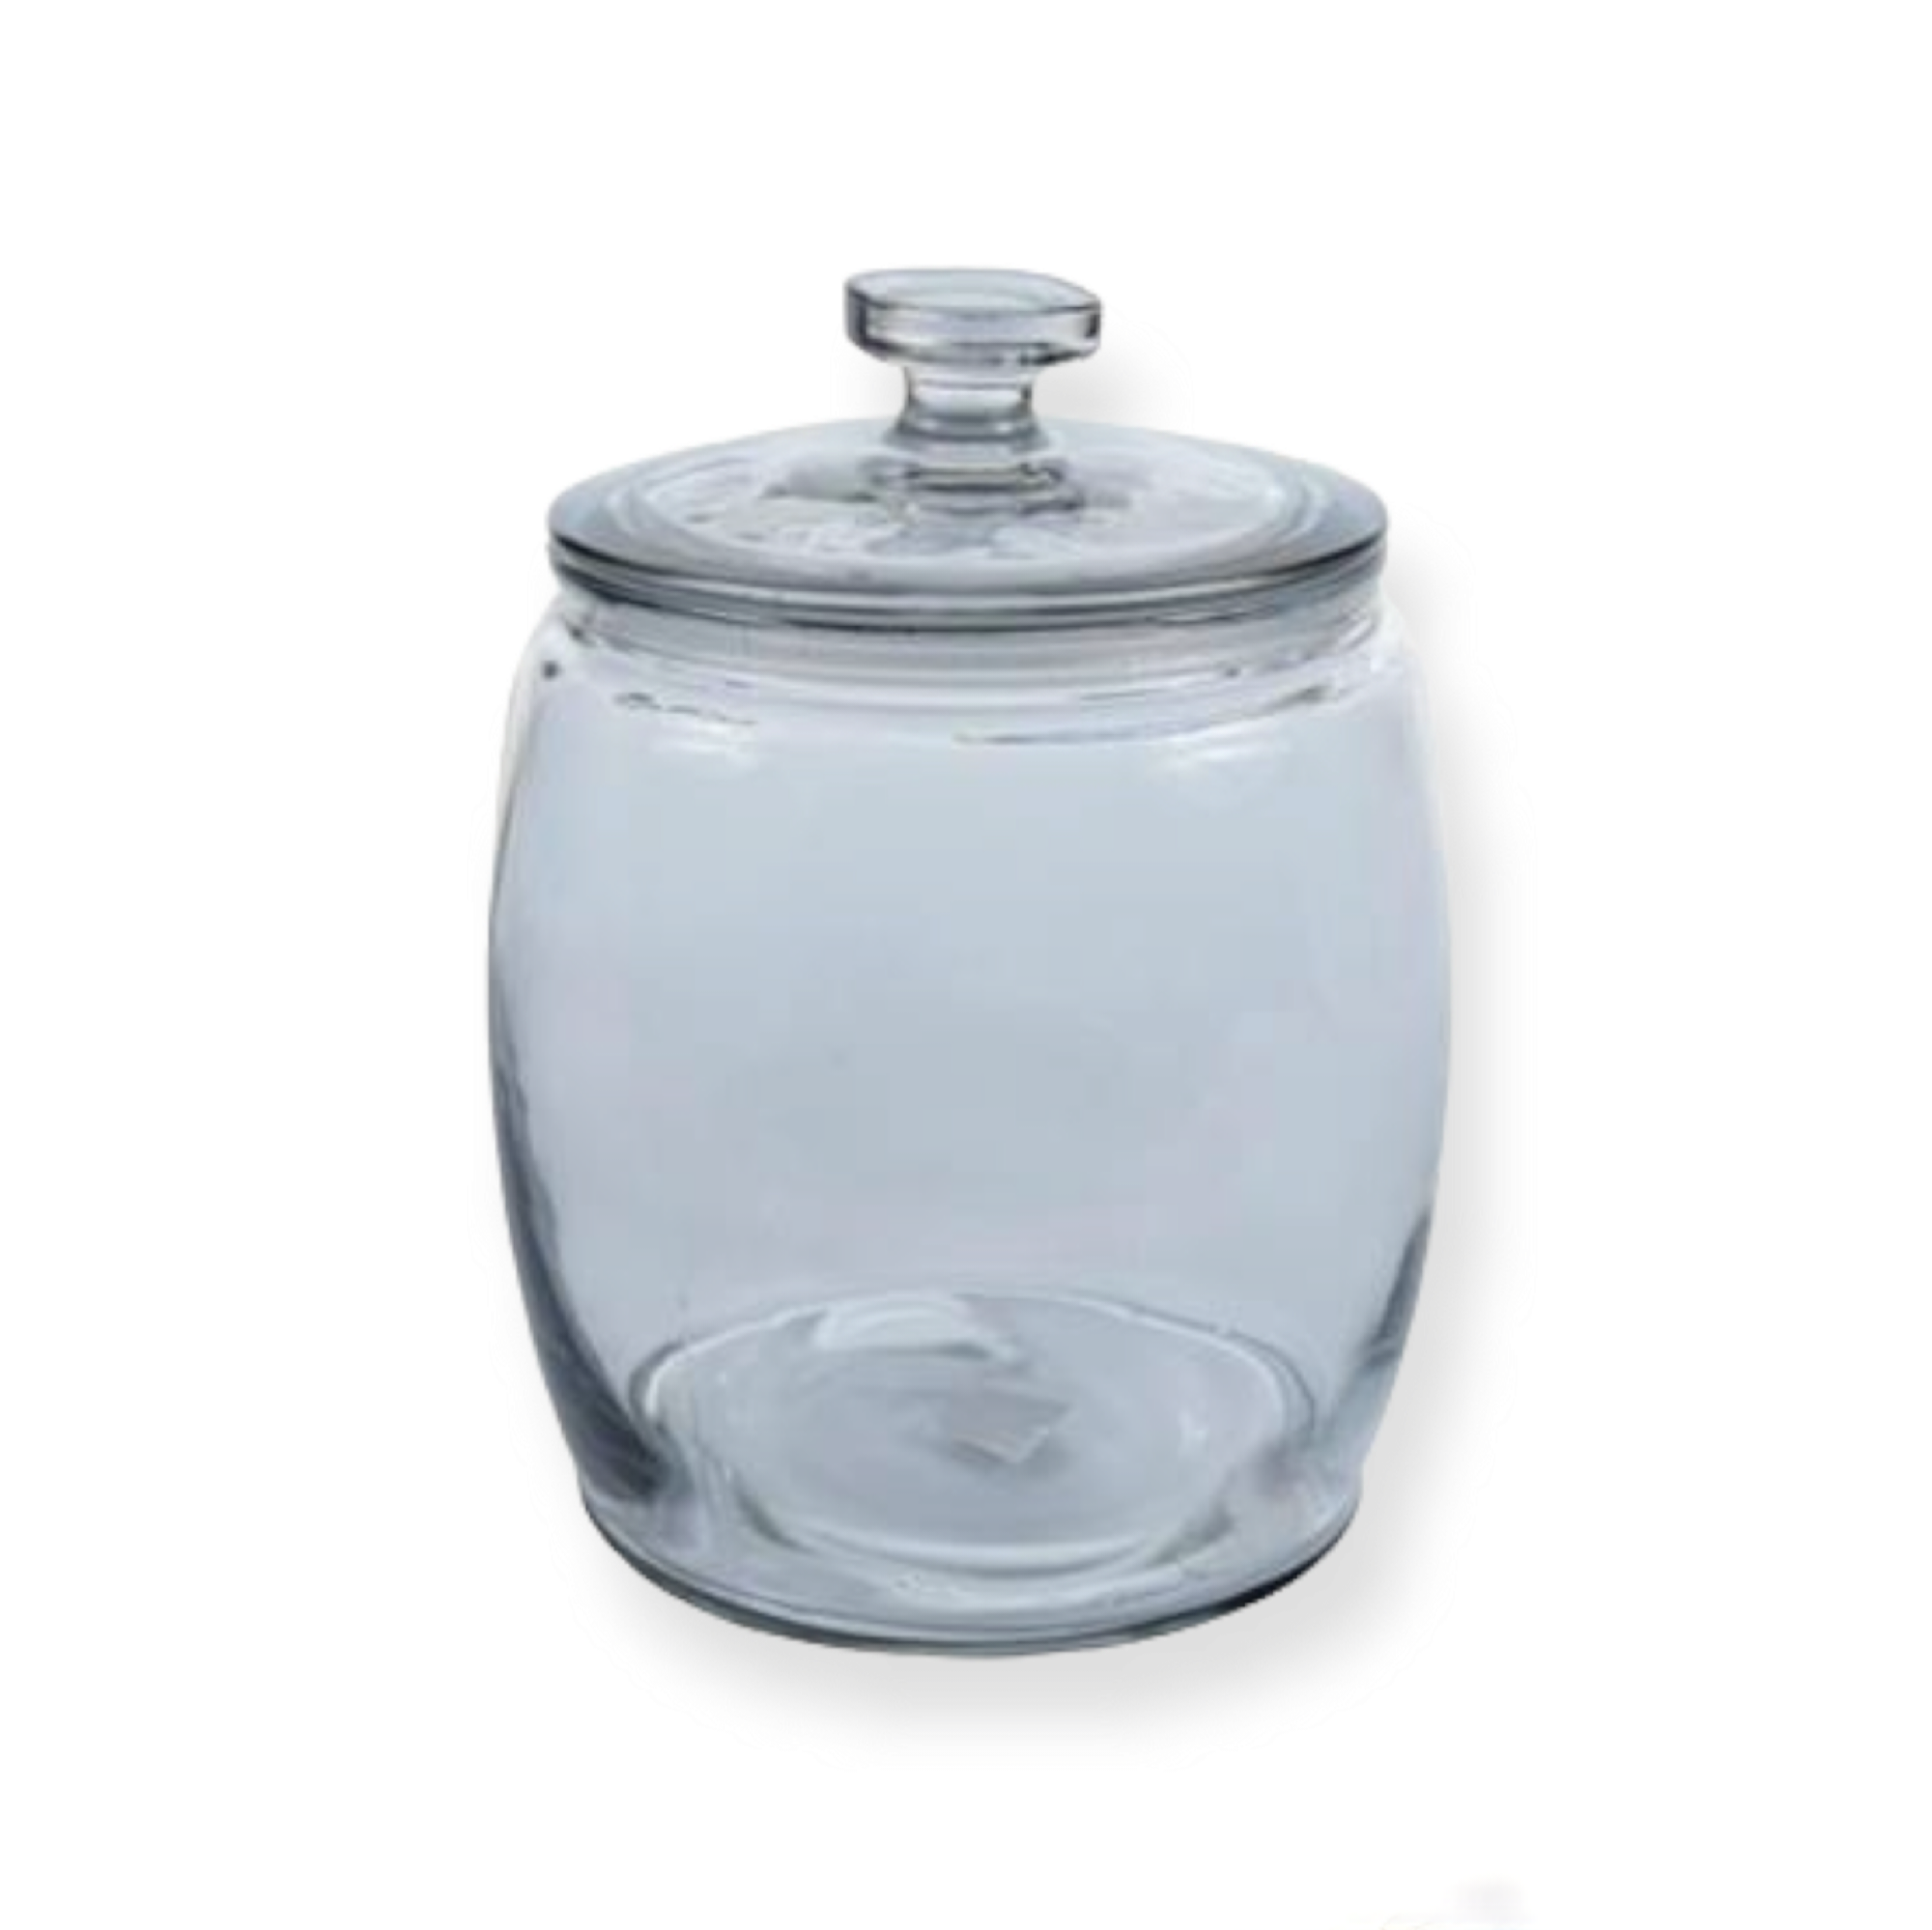 Aqua Canister Glass Belly Jar Lid 8.4L 27582